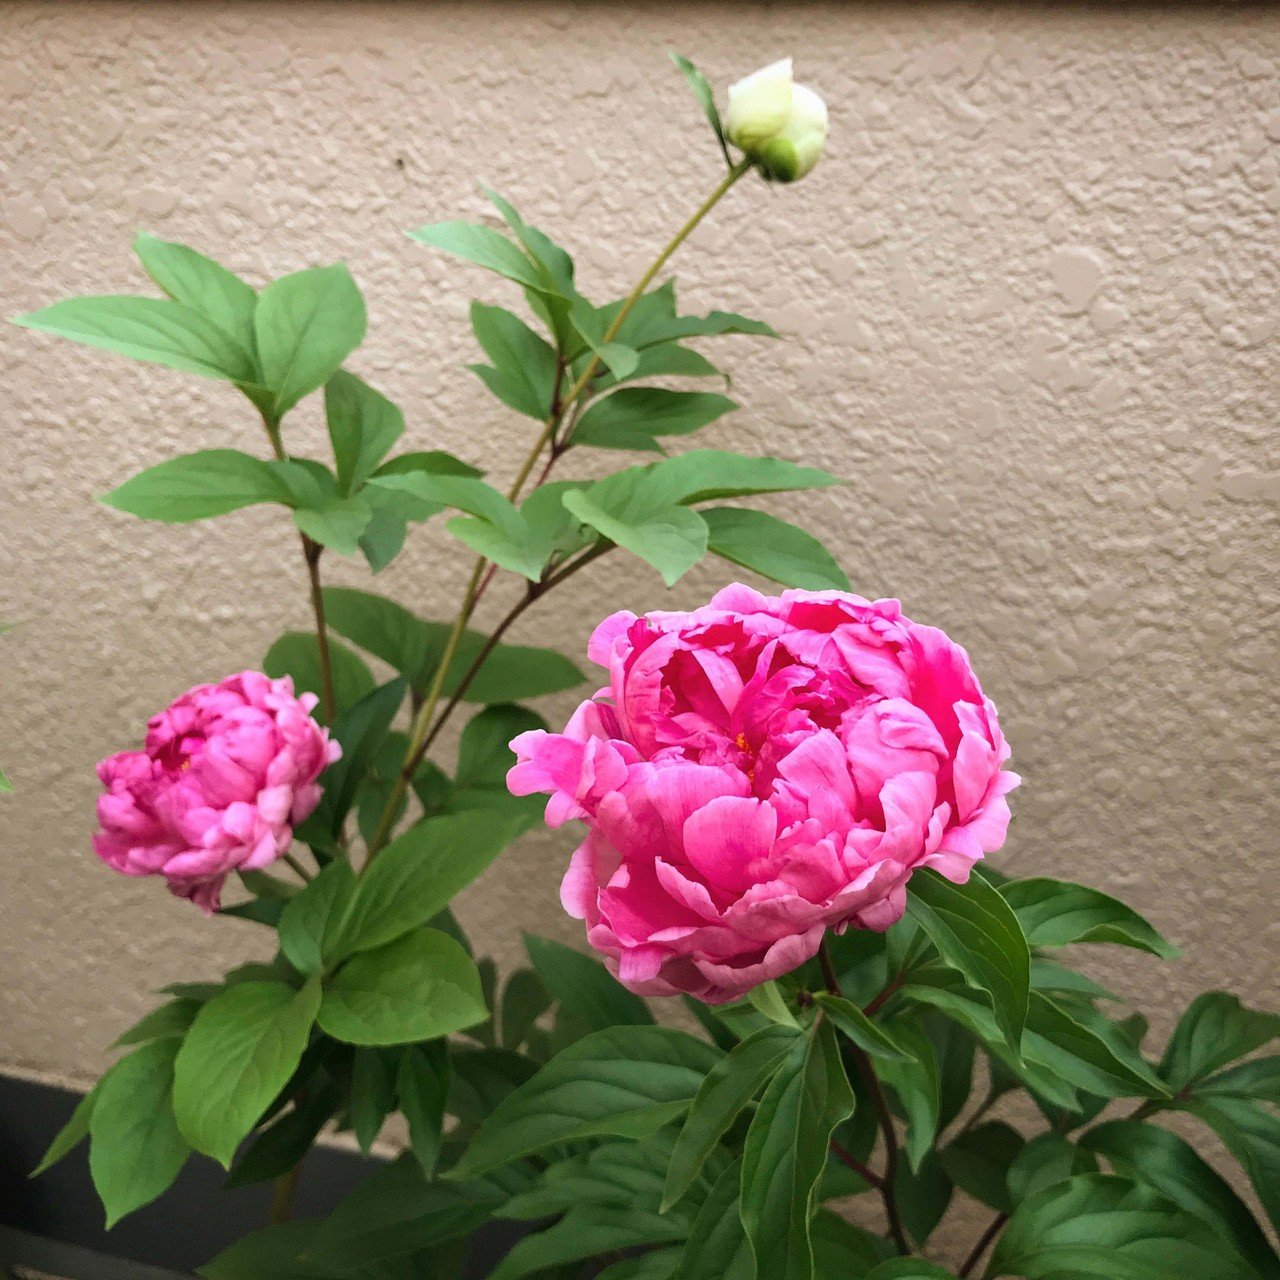 ピンクのは八重の芍薬 苗で家に来てから3年目にしてやっと咲いてくれました 初めまして ᵕᴗᵕ 芍薬 は難しくて 花が咲くのは運任せなところがあるので 今年はラッキーみたいです 青野りえ Note